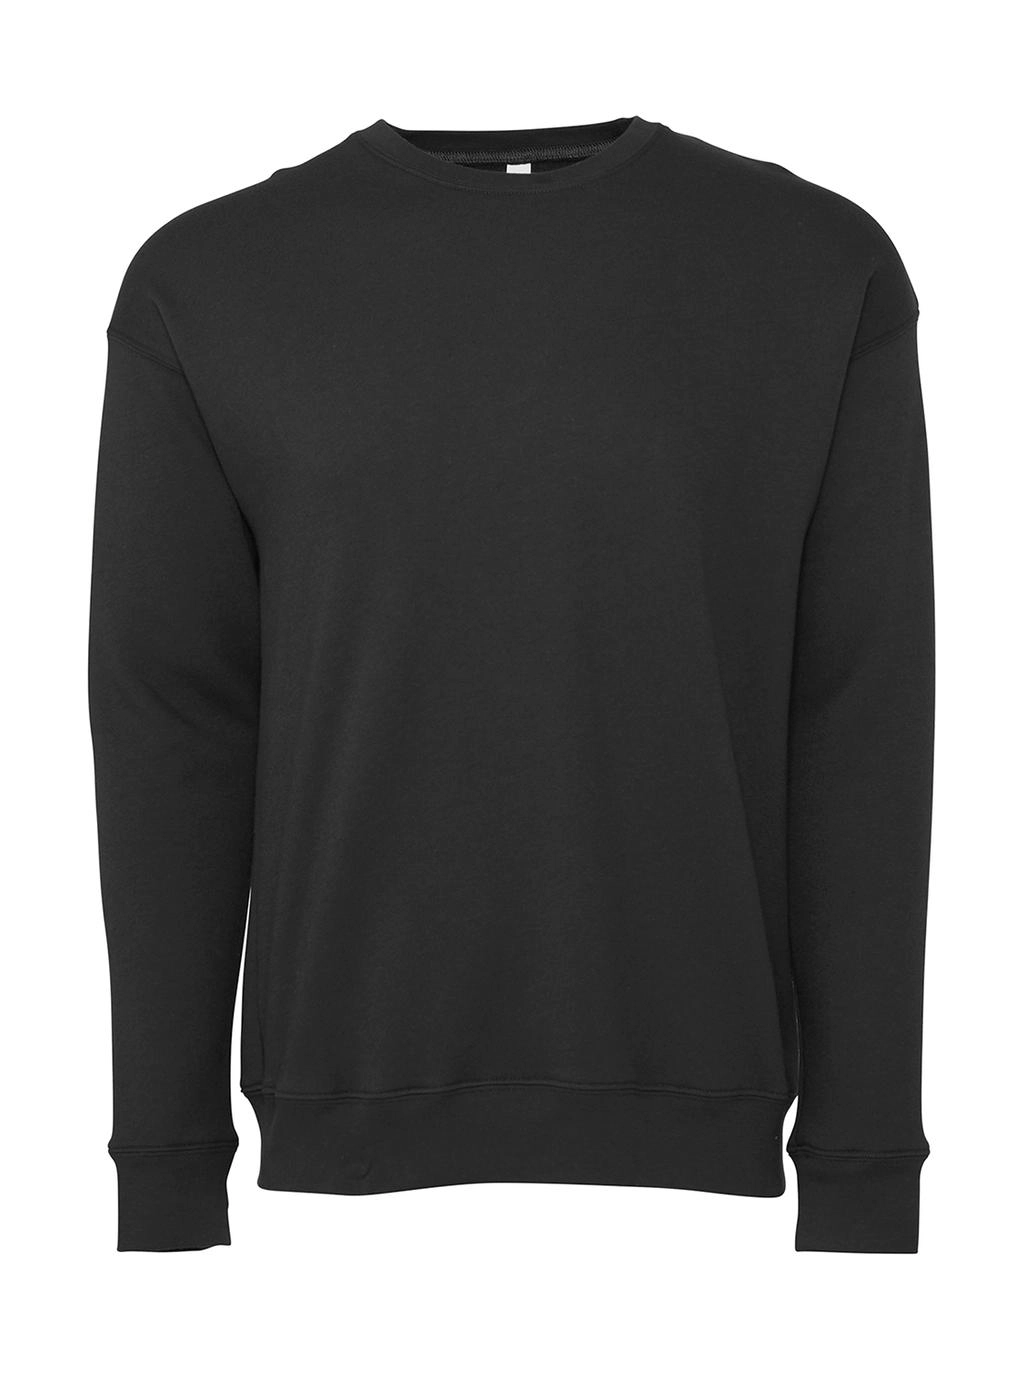 Unisex Drop Shoulder Fleece zum Besticken und Bedrucken in der Farbe Dark Grey Heather mit Ihren Logo, Schriftzug oder Motiv.